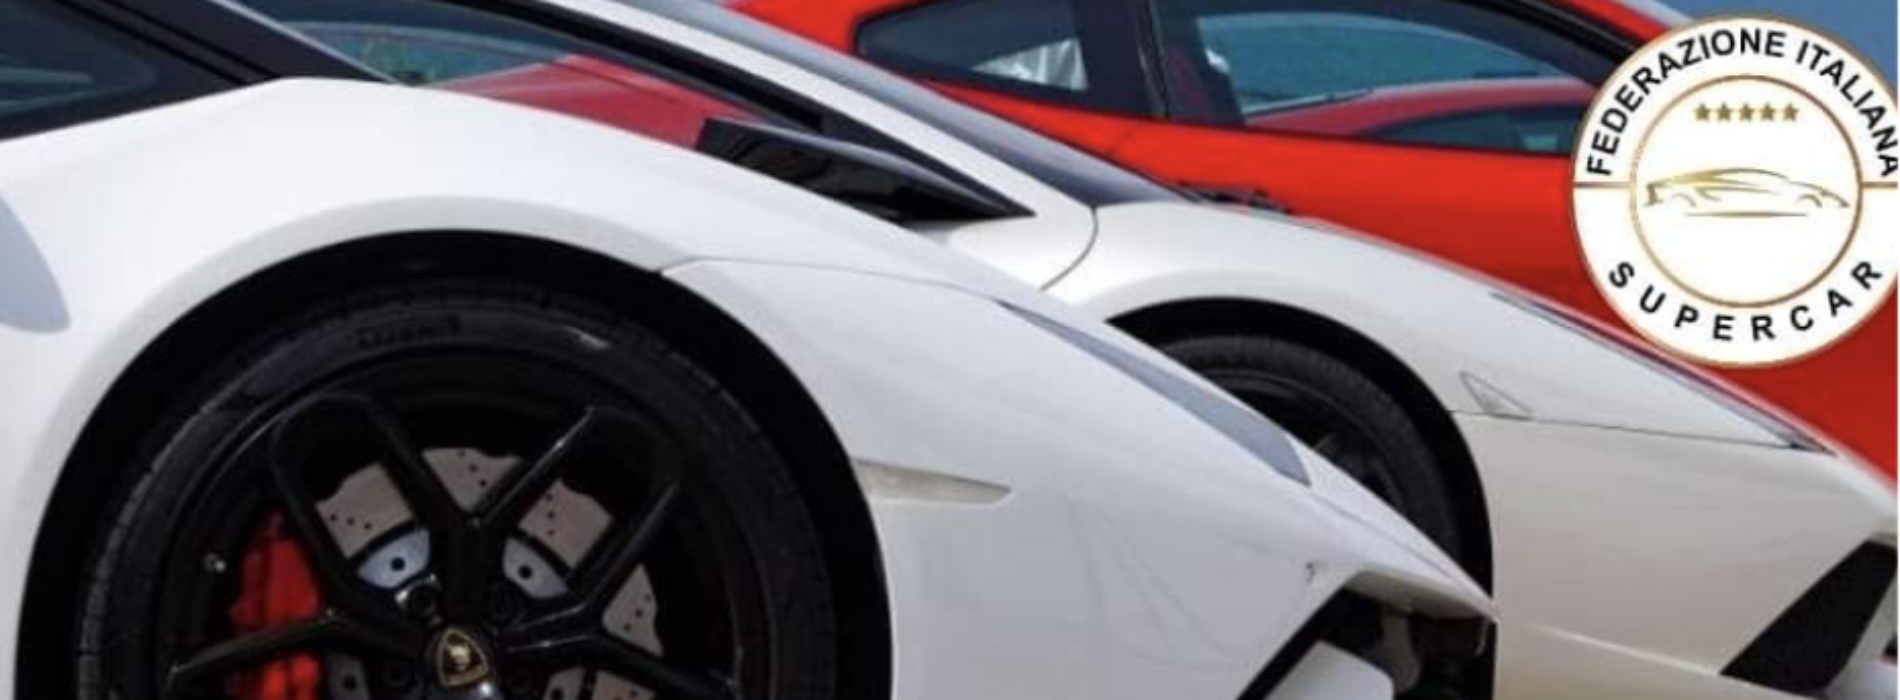 SuperCar: Ferrari, Lamborghini e Porsche. Il raduno a Caserta